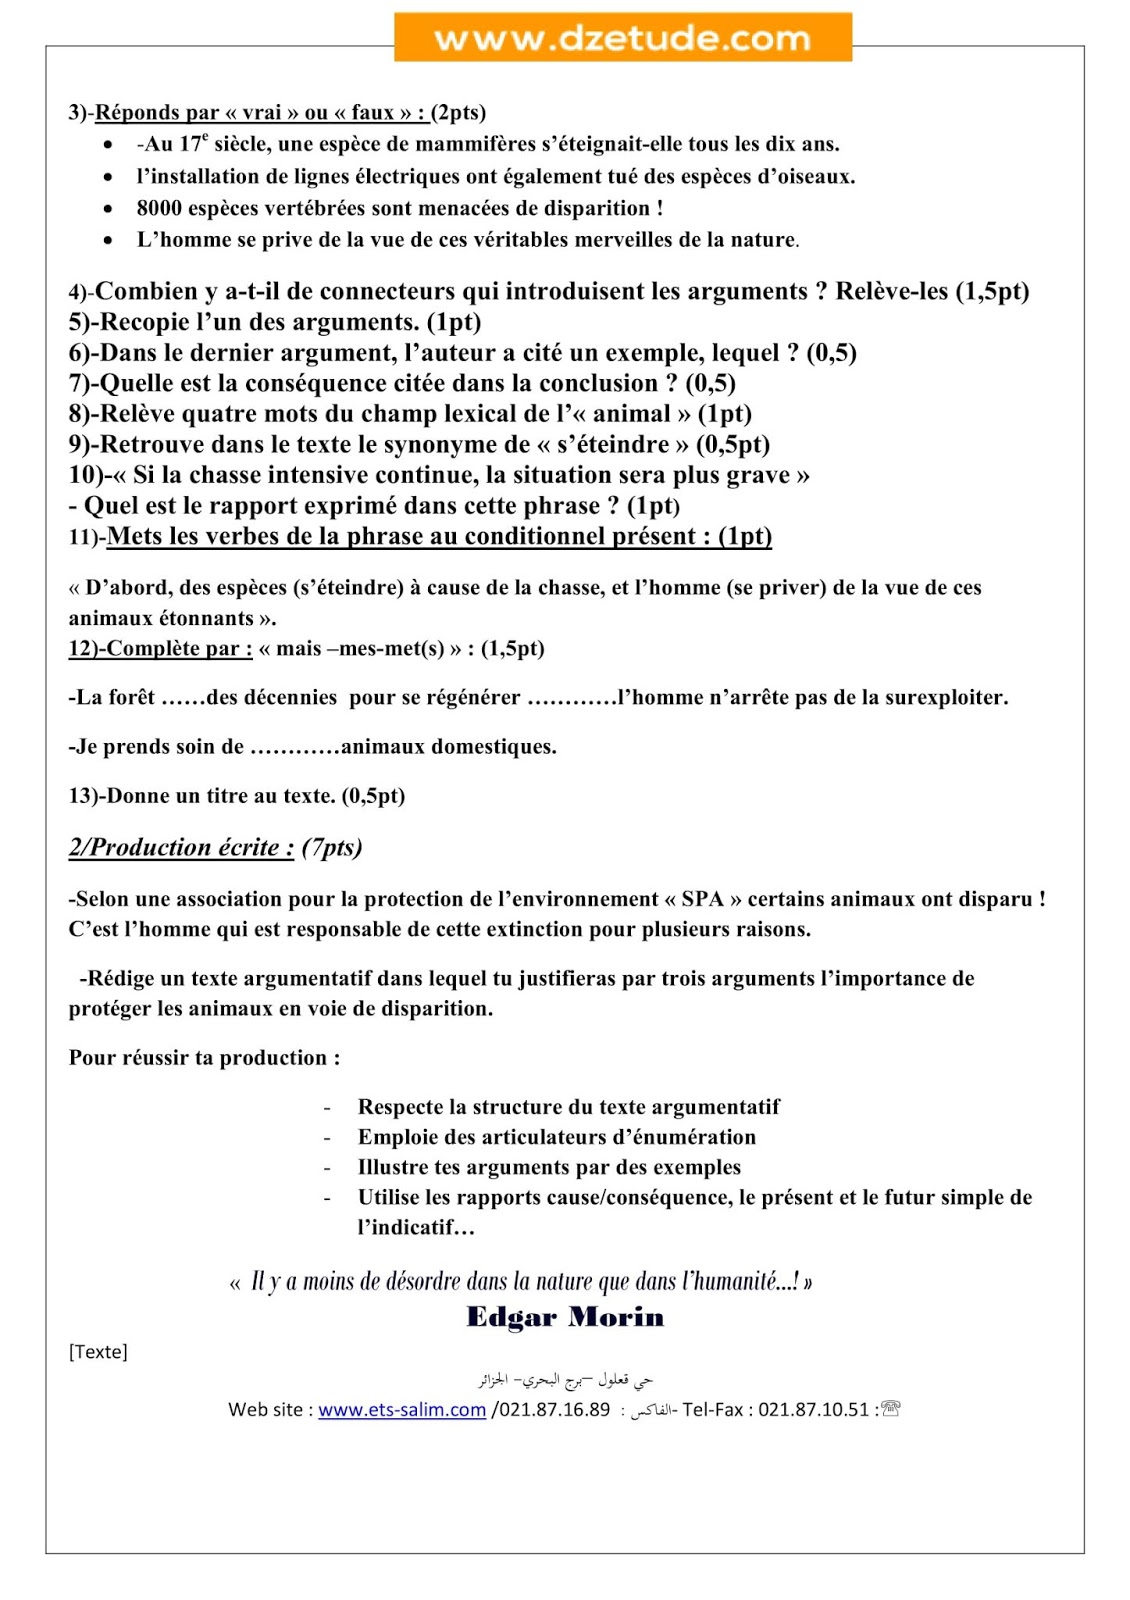 إختبار الفصل الأول في اللغة الفرنسية للسنة الرابعة متوسط - الجيل الثاني نموذج 1